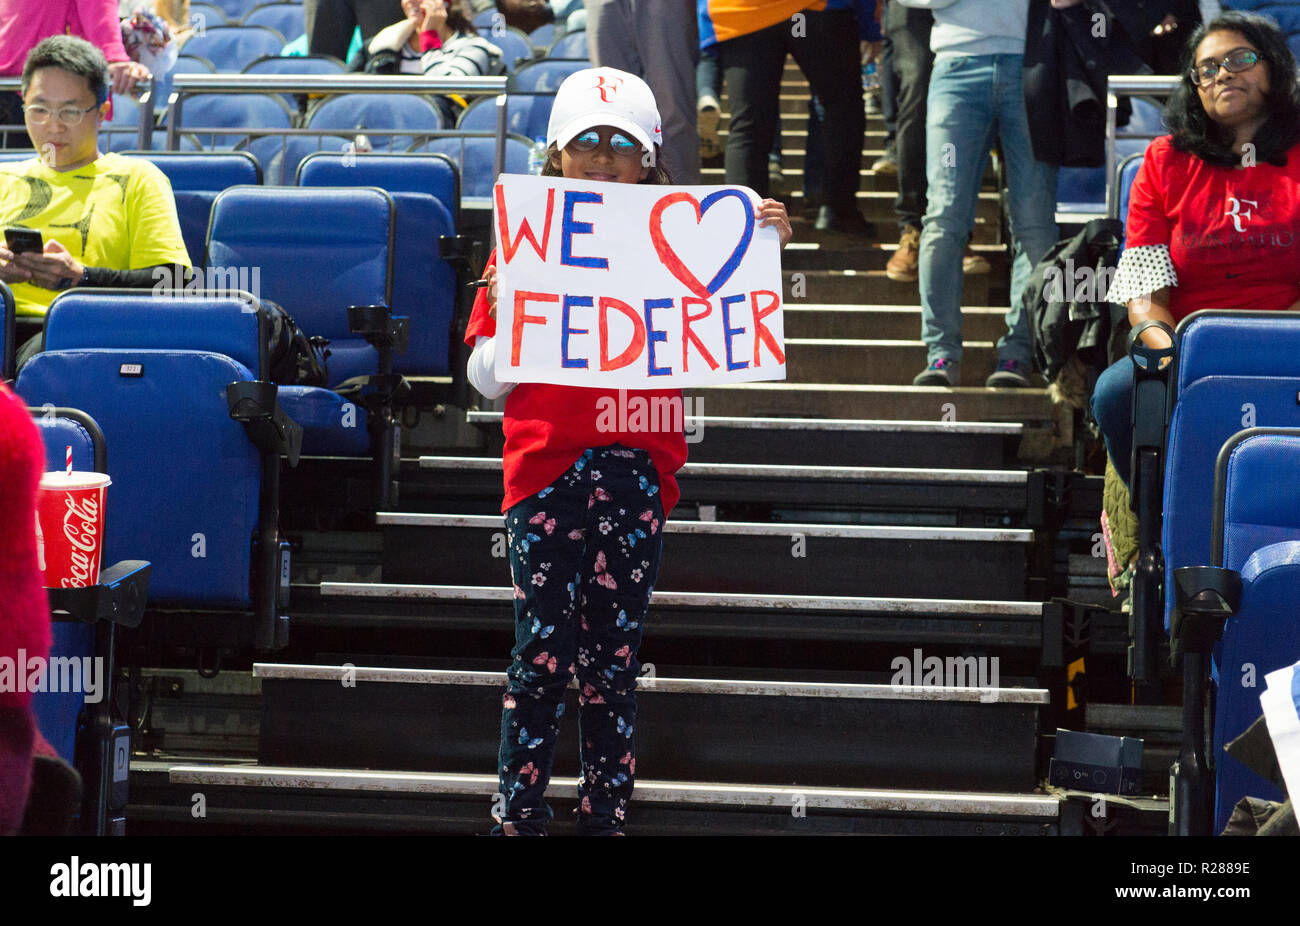 O2, Londres, Royaume-Uni. 17 novembre, 2018. Demi-finales jour du tournoi à l'O2 Arena de Londres, match de l'après-midi. Roger Federer (SUI), classé 2, vs Alexander Zverev (GER), classé 3. Zverev knocks out Federer pour atteindre la finale, gagnant 7-5 7-6 (7-5). Credit : Malcolm Park/Alamy Live News. Banque D'Images